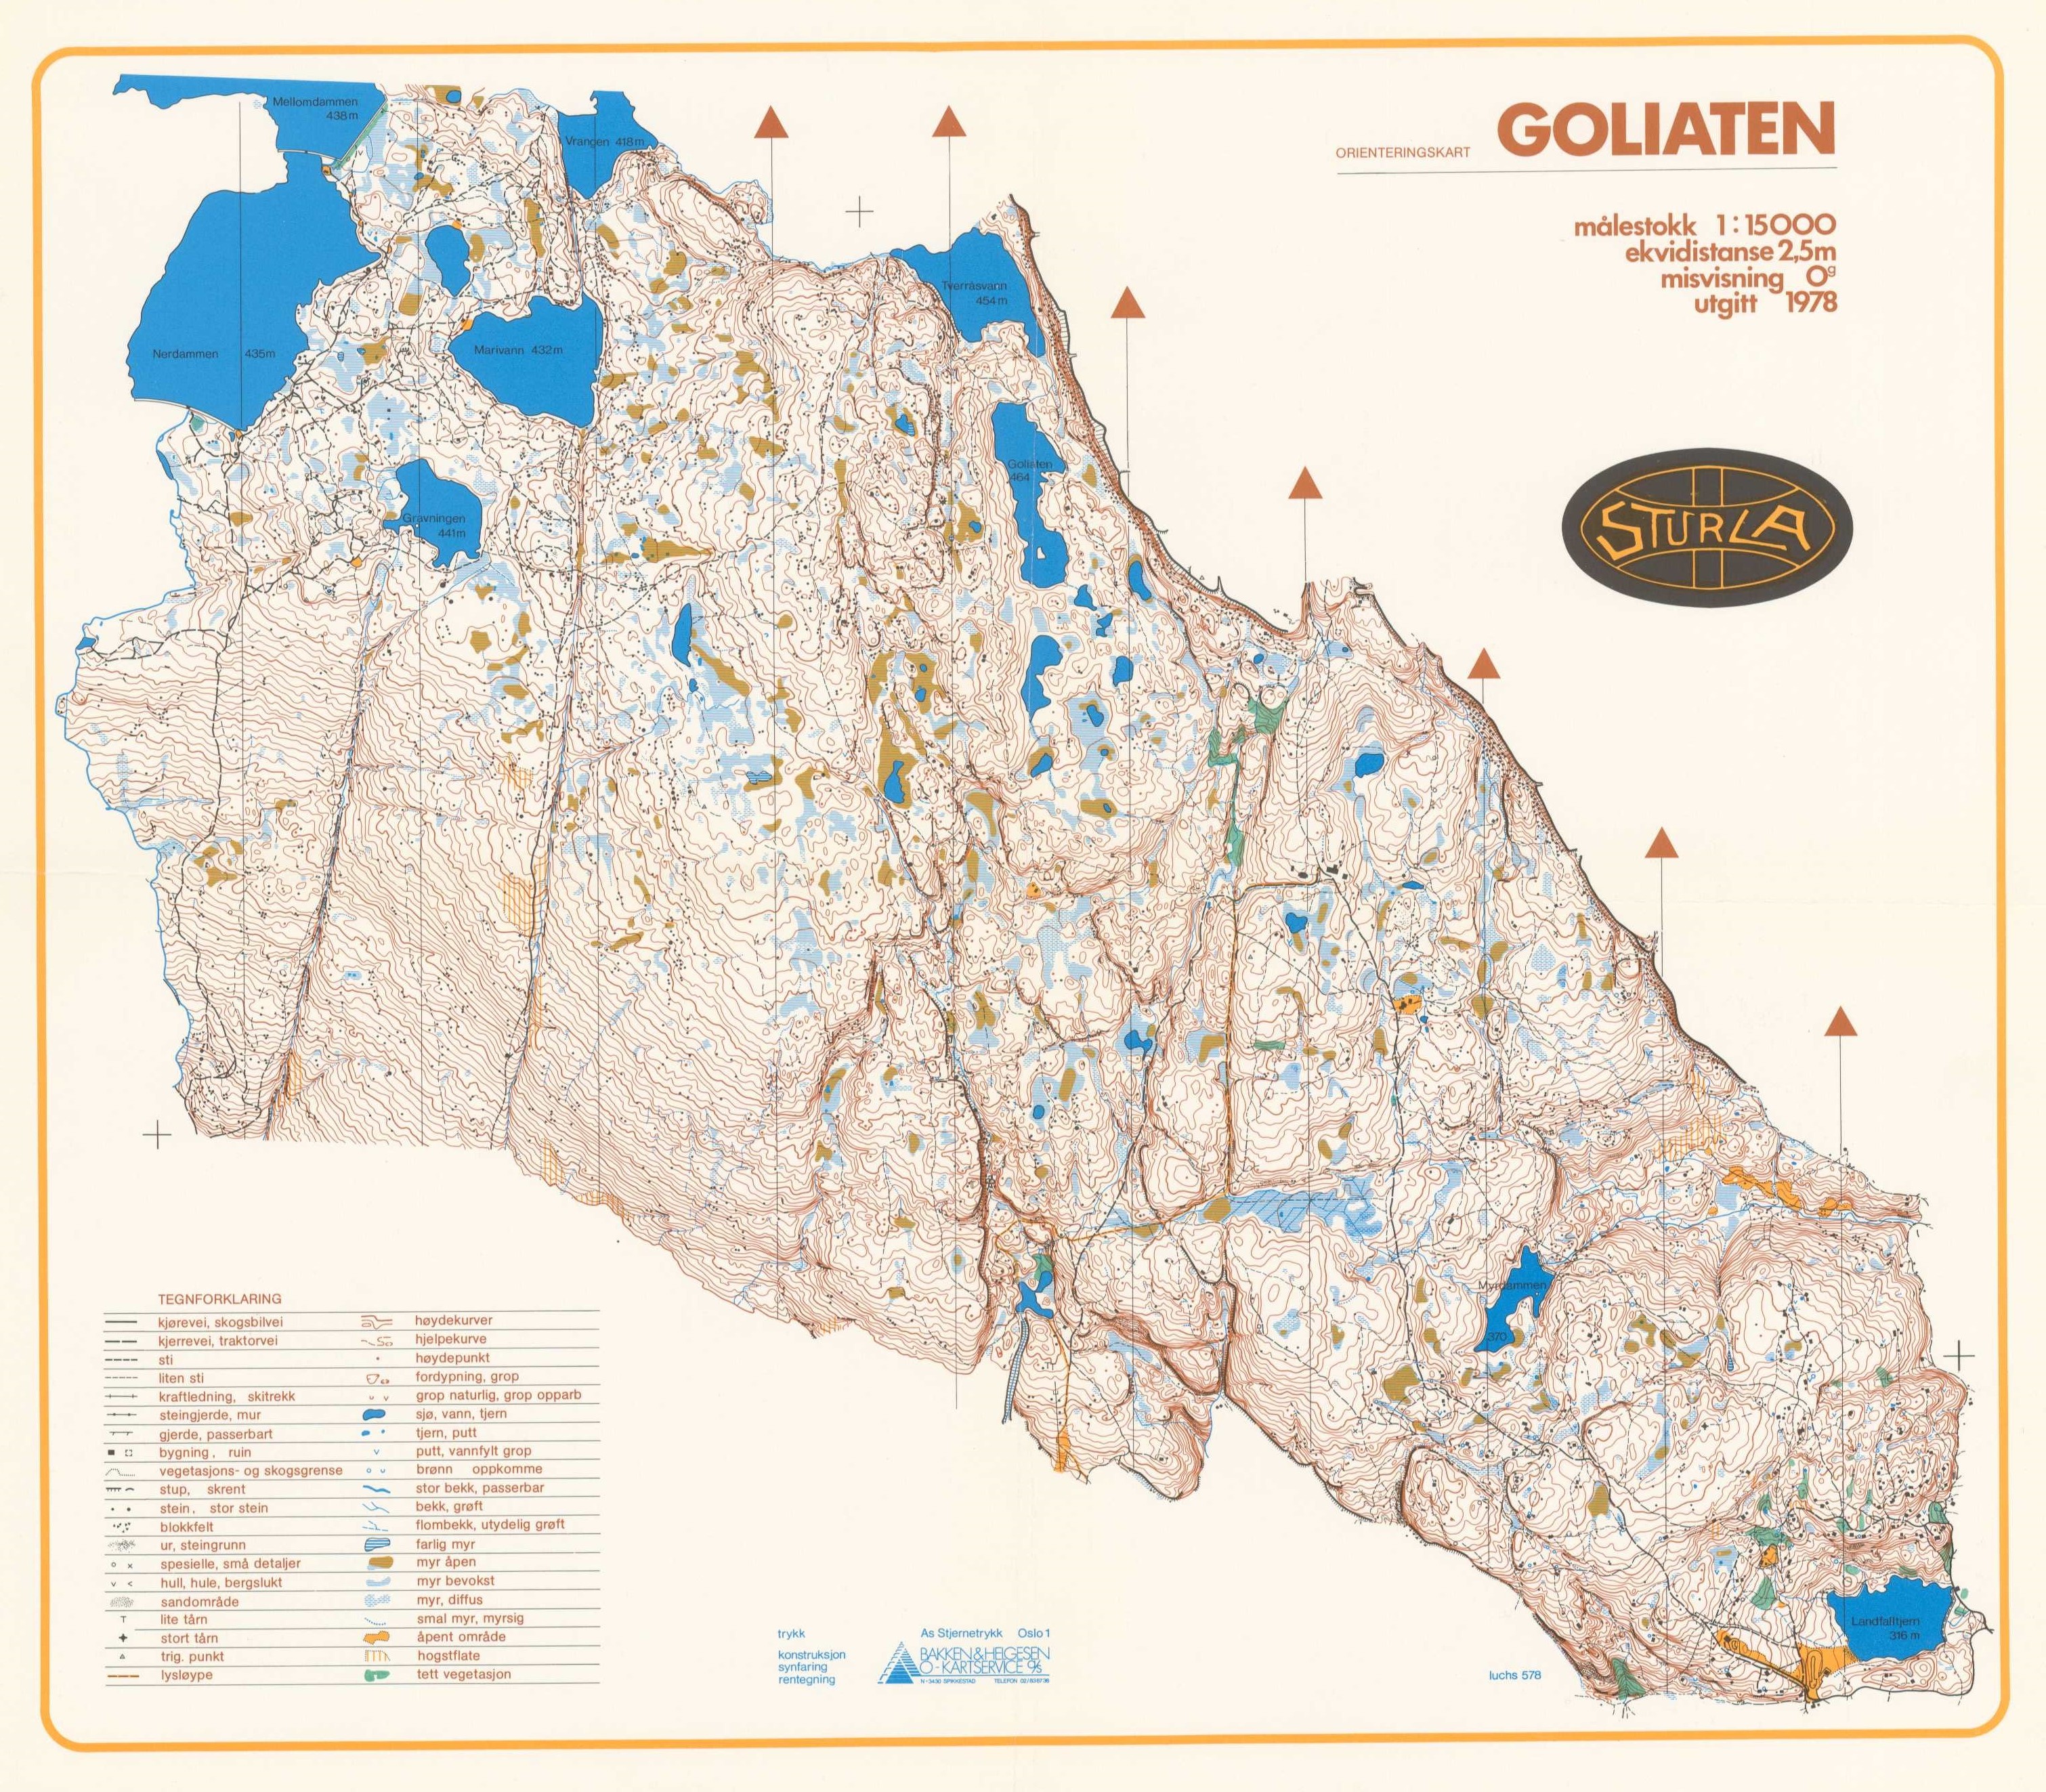 Goliaten (01/05/1978)